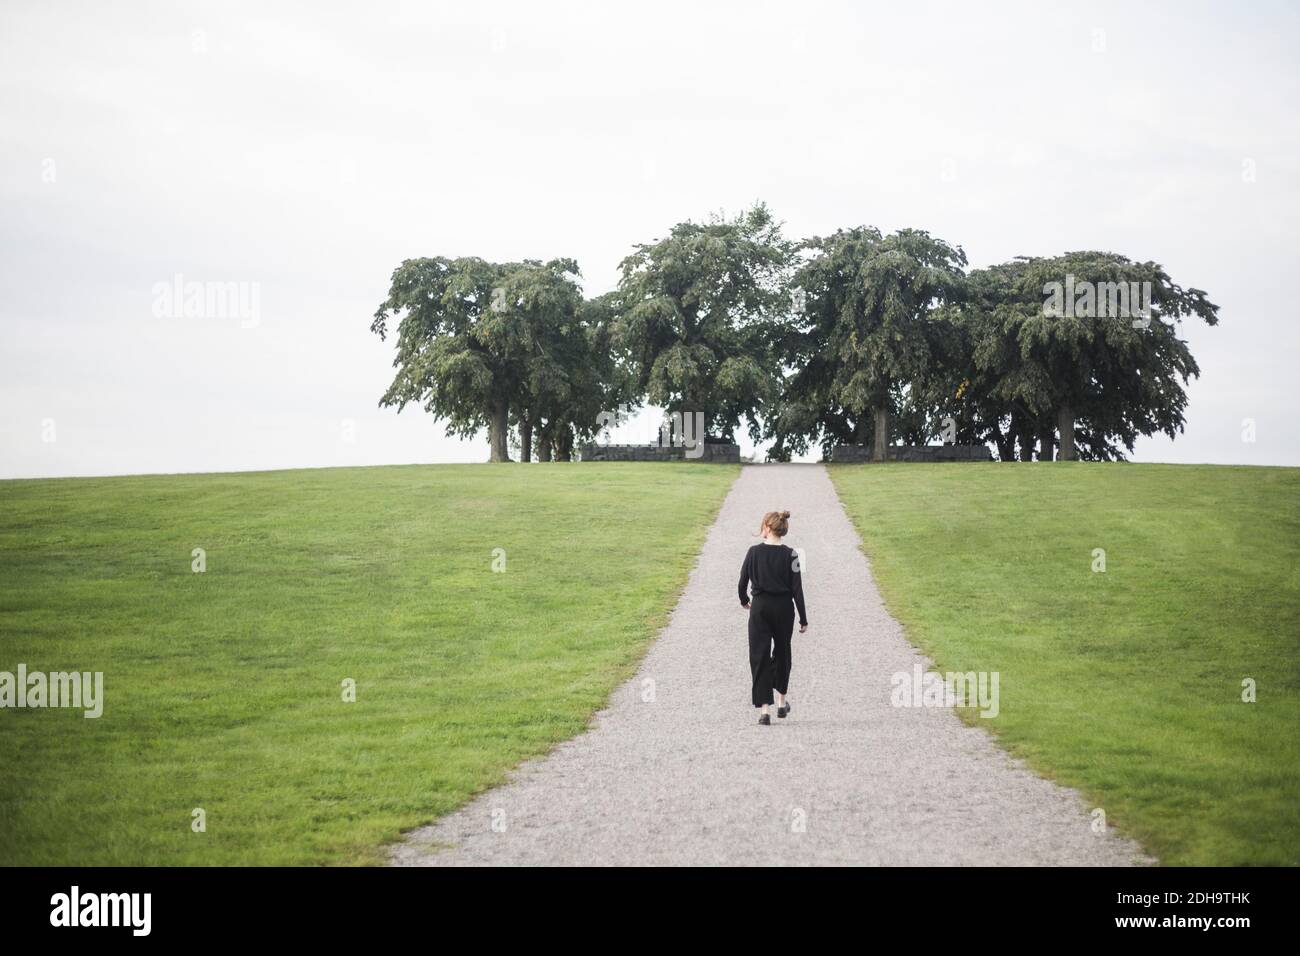 Vue arrière de la jeune femme marchant au milieu de la terre herbeuse contre arbres et ciel Banque D'Images